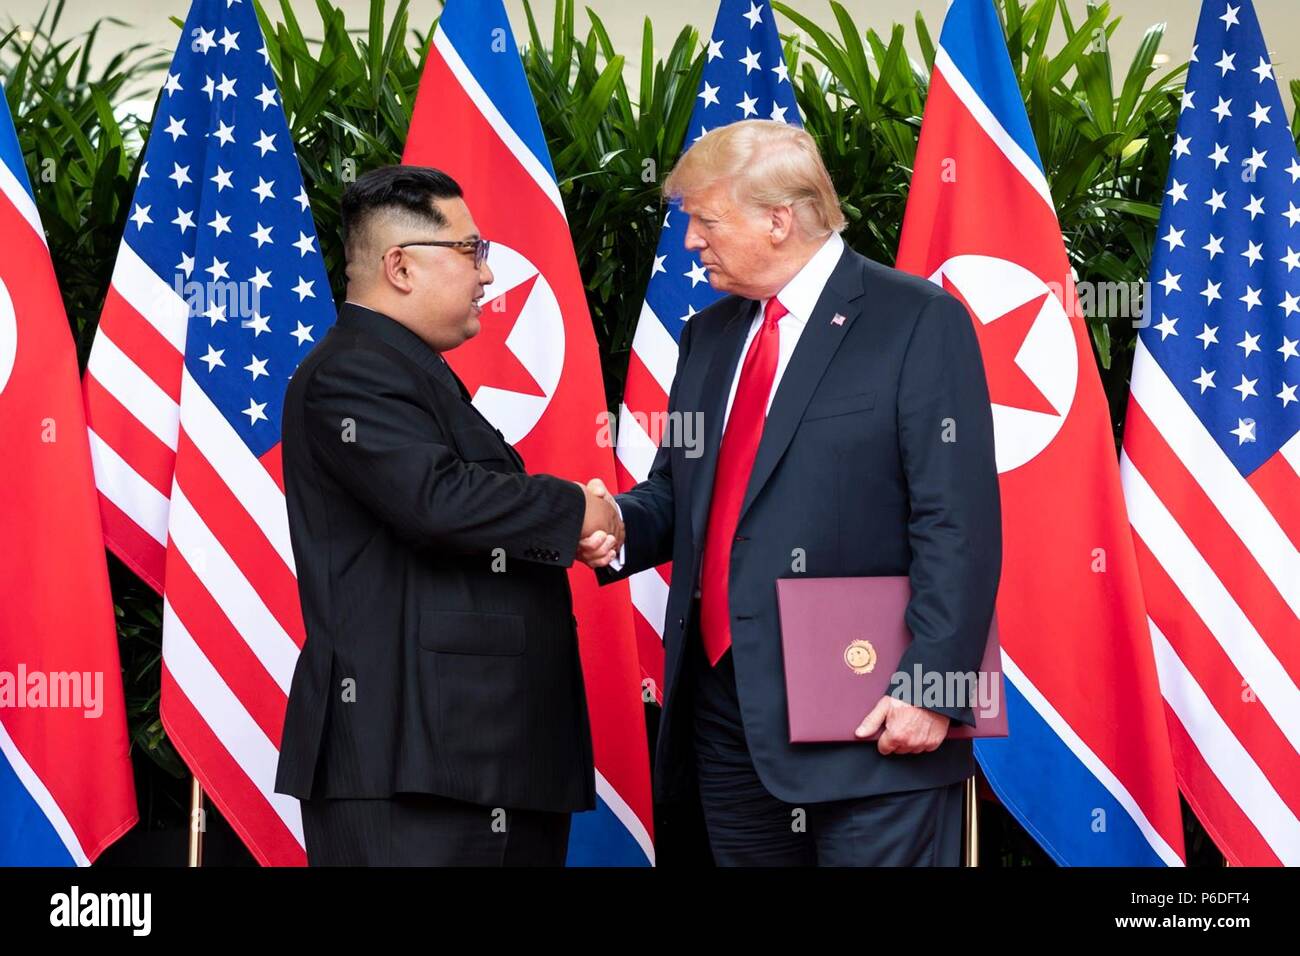 Us-Präsident Donald Trump, rechts, schüttelt Hände mit dem nordkoreanischen Führer Kim Jong Un nach einer Zeremonie an der Capella resort Juni 12, 2018 in Insel Sentosa, Singapur. Stockfoto